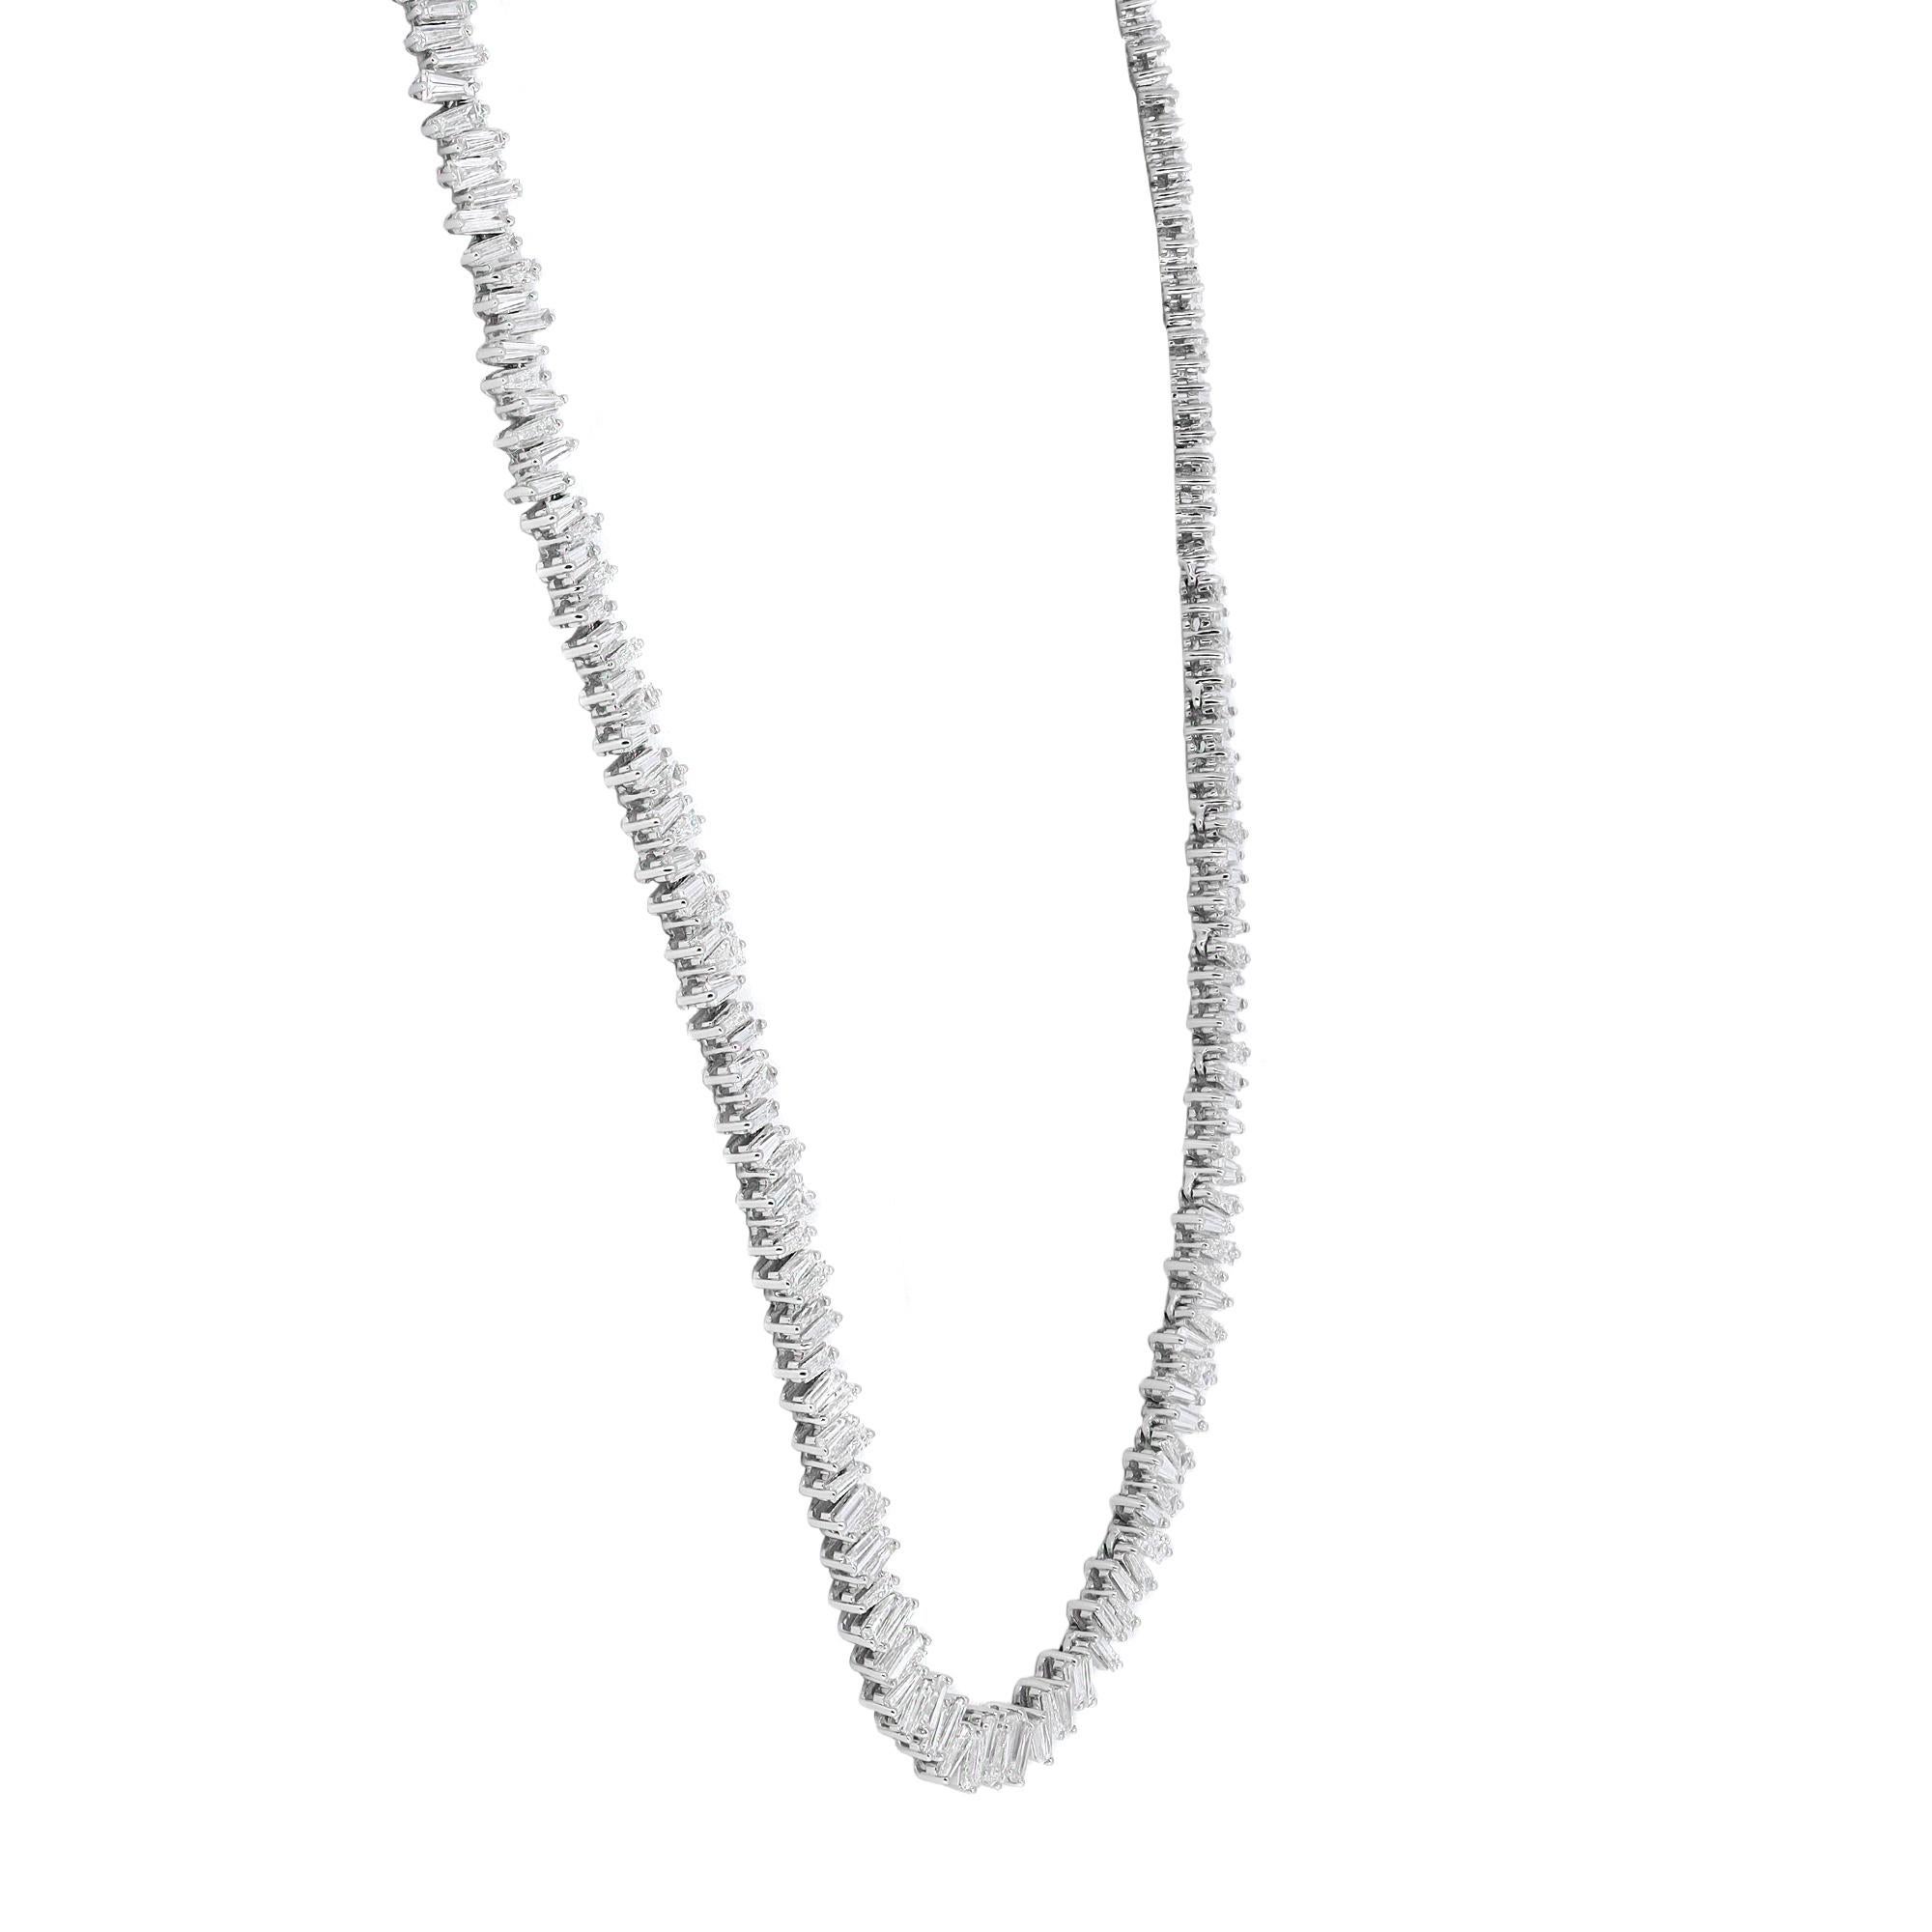 Diese elegante und verführerische Diamant-Tennis-Halskette ist mit schimmernden weißen Diamanten im Baguetteschliff mit einem Gesamtgewicht von 13,02 Karat in Zacken gesetzt. Gefertigt aus feinem 18-karätigem Weißgold. Die Halskette wird mit einem